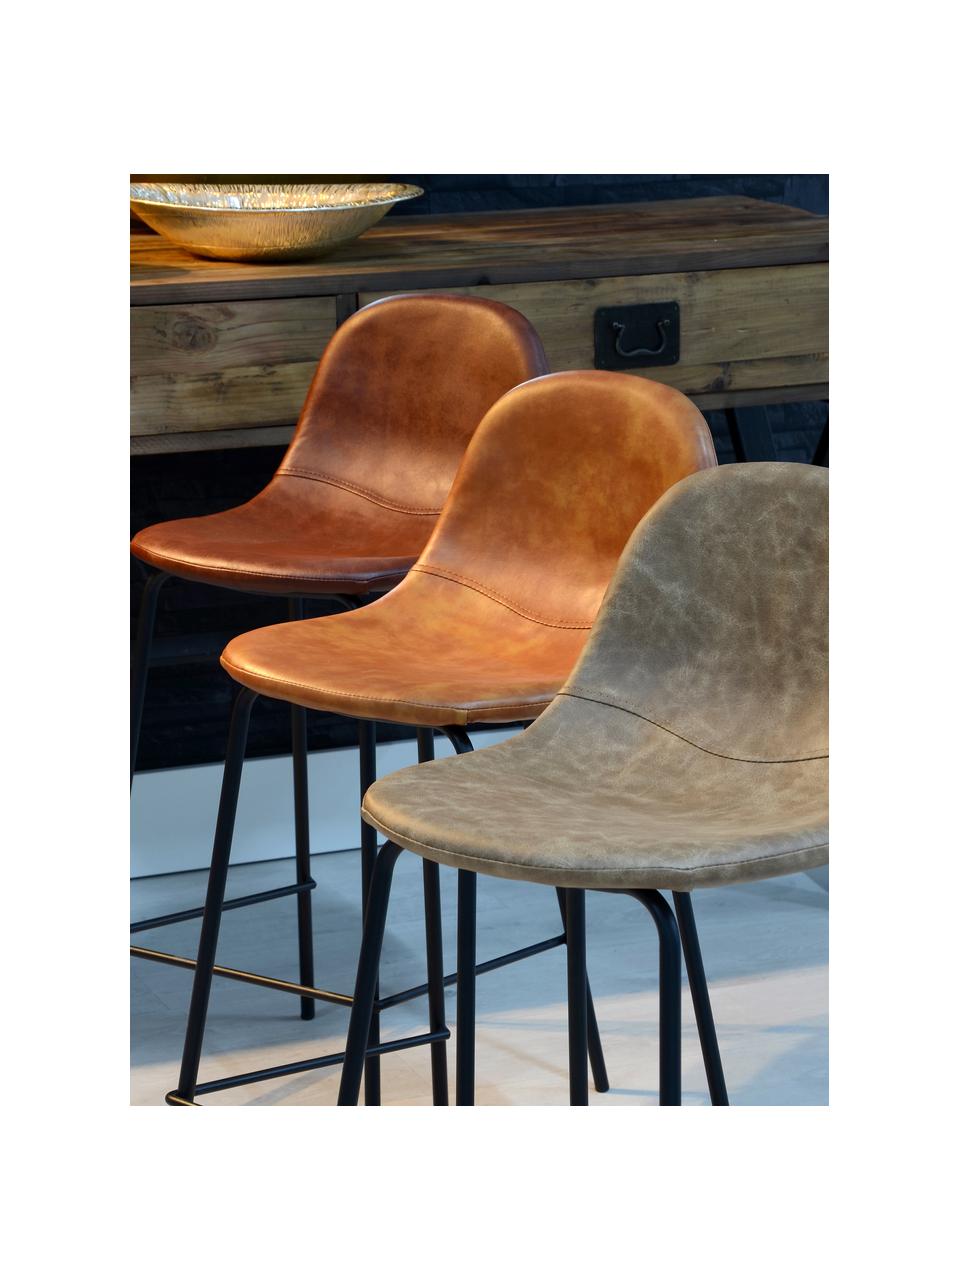 Krzesło barowe ze sztucznej skóry Adeline, Tapicerka: sztuczna skóra (poliureta, Stelaż: drewno bukowe, Nogi: metal, Beżowy, czarny, S 42 x W 87 cm